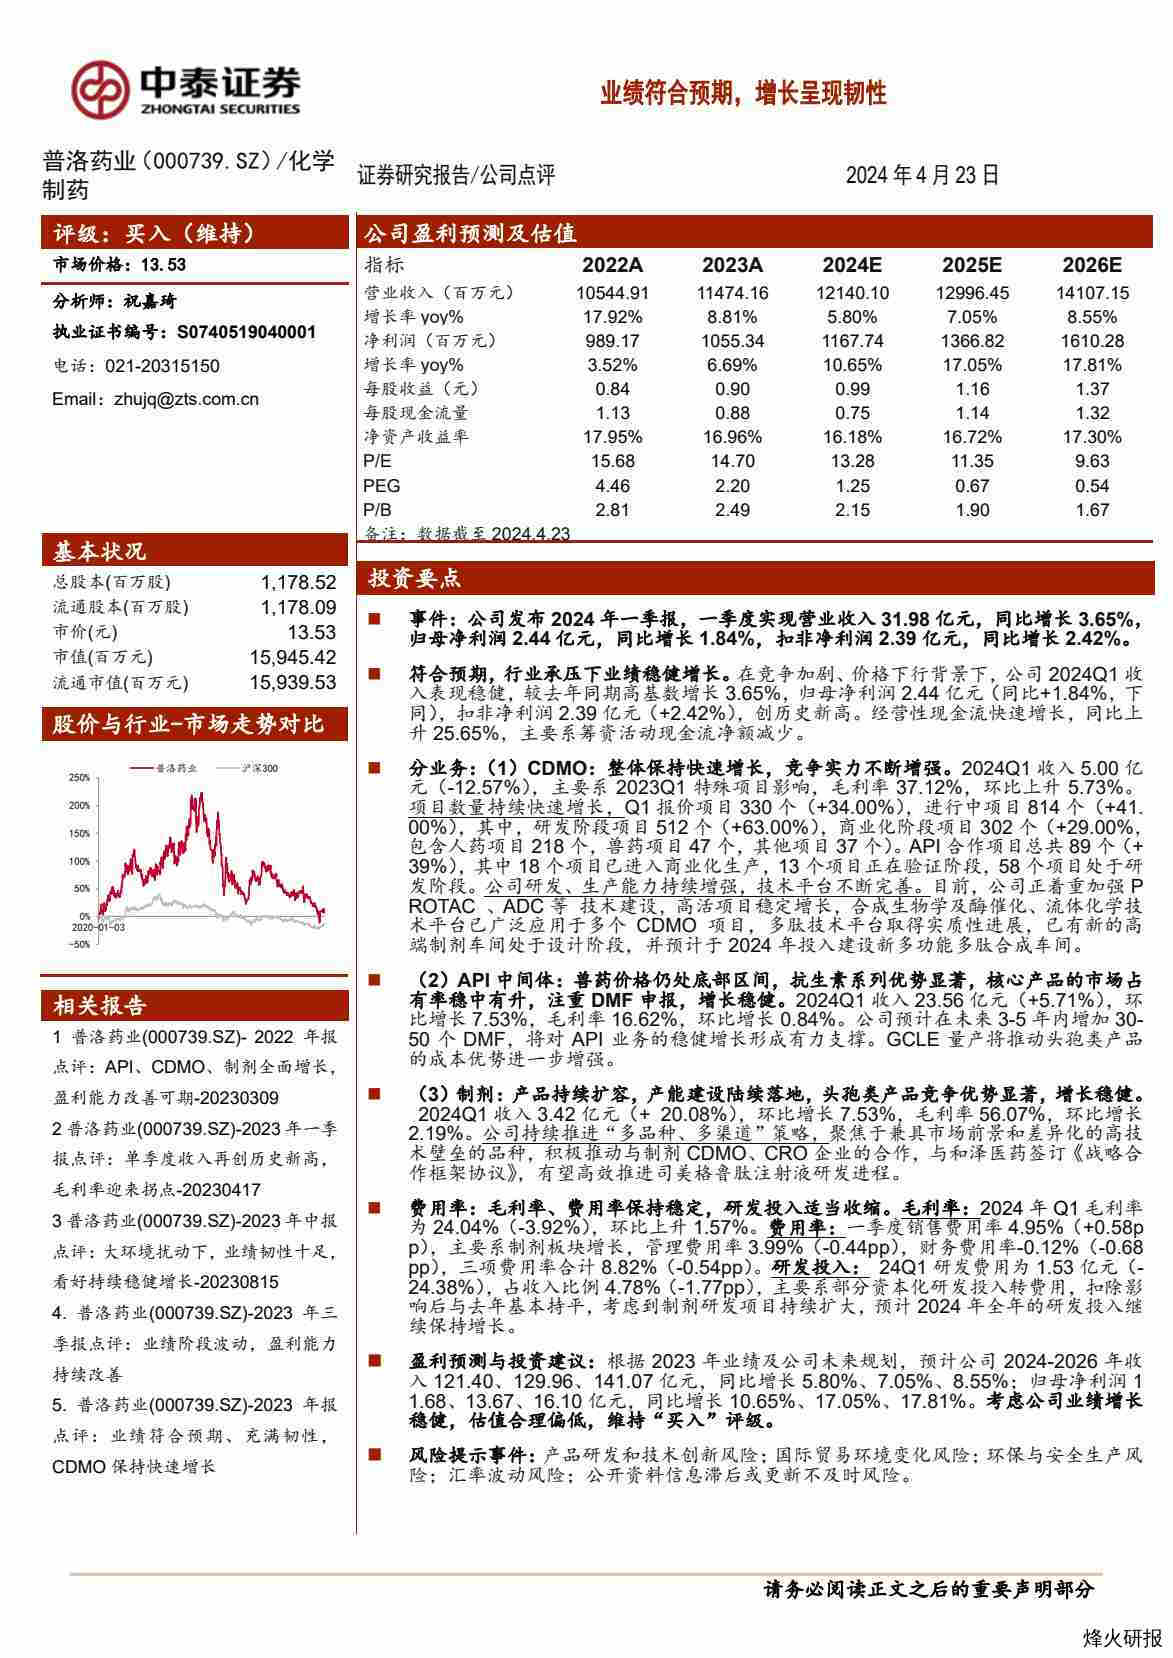 【中泰证券】业绩符合预期，增长呈现韧性.pdf-第一页